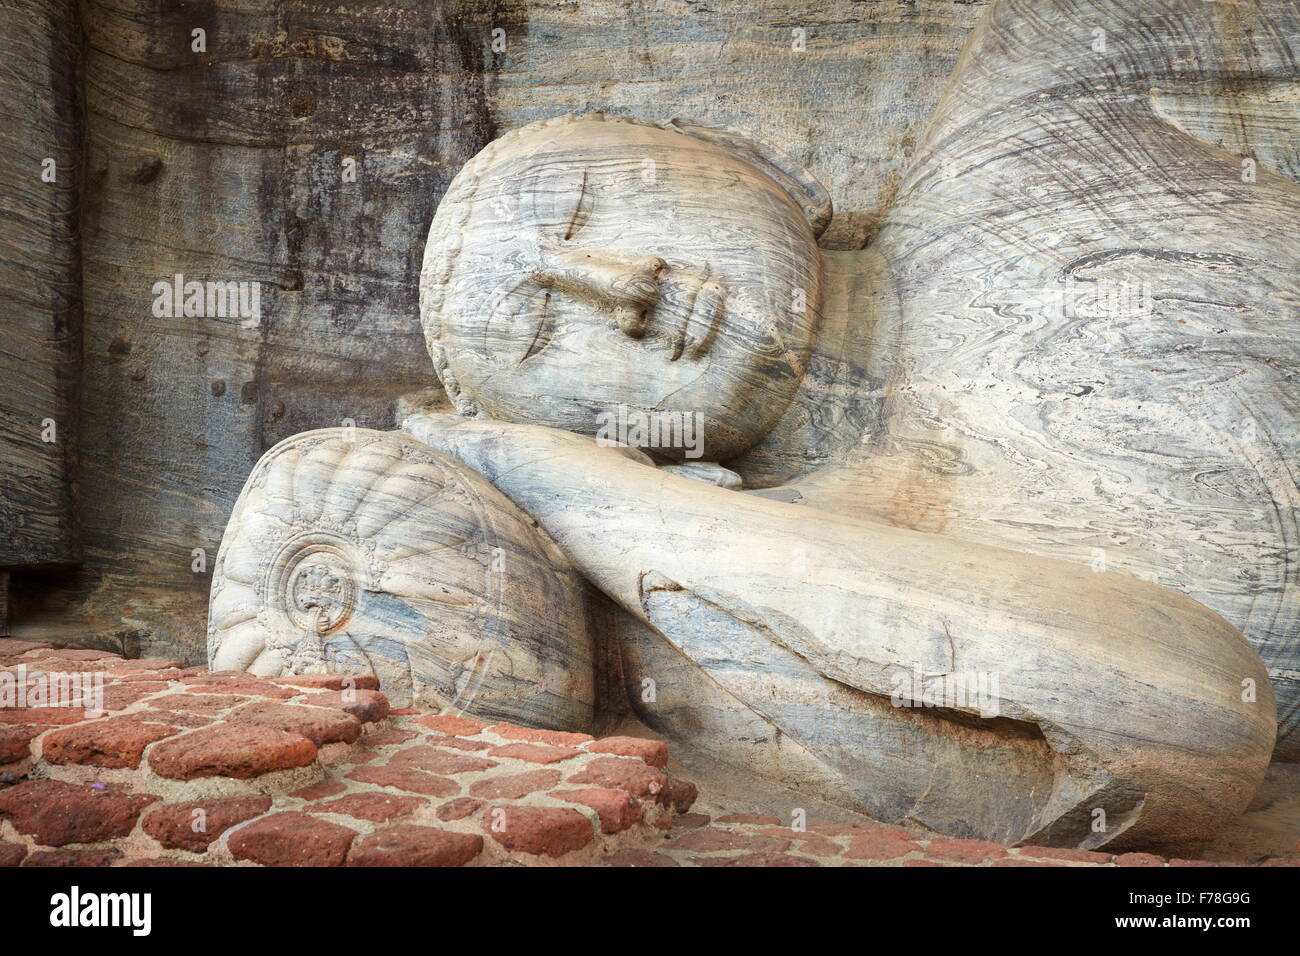 Sri Lanka - Polonnaruwa, Gal Vihara Tempio del Buddha statua di pietra, UNESCO Foto Stock